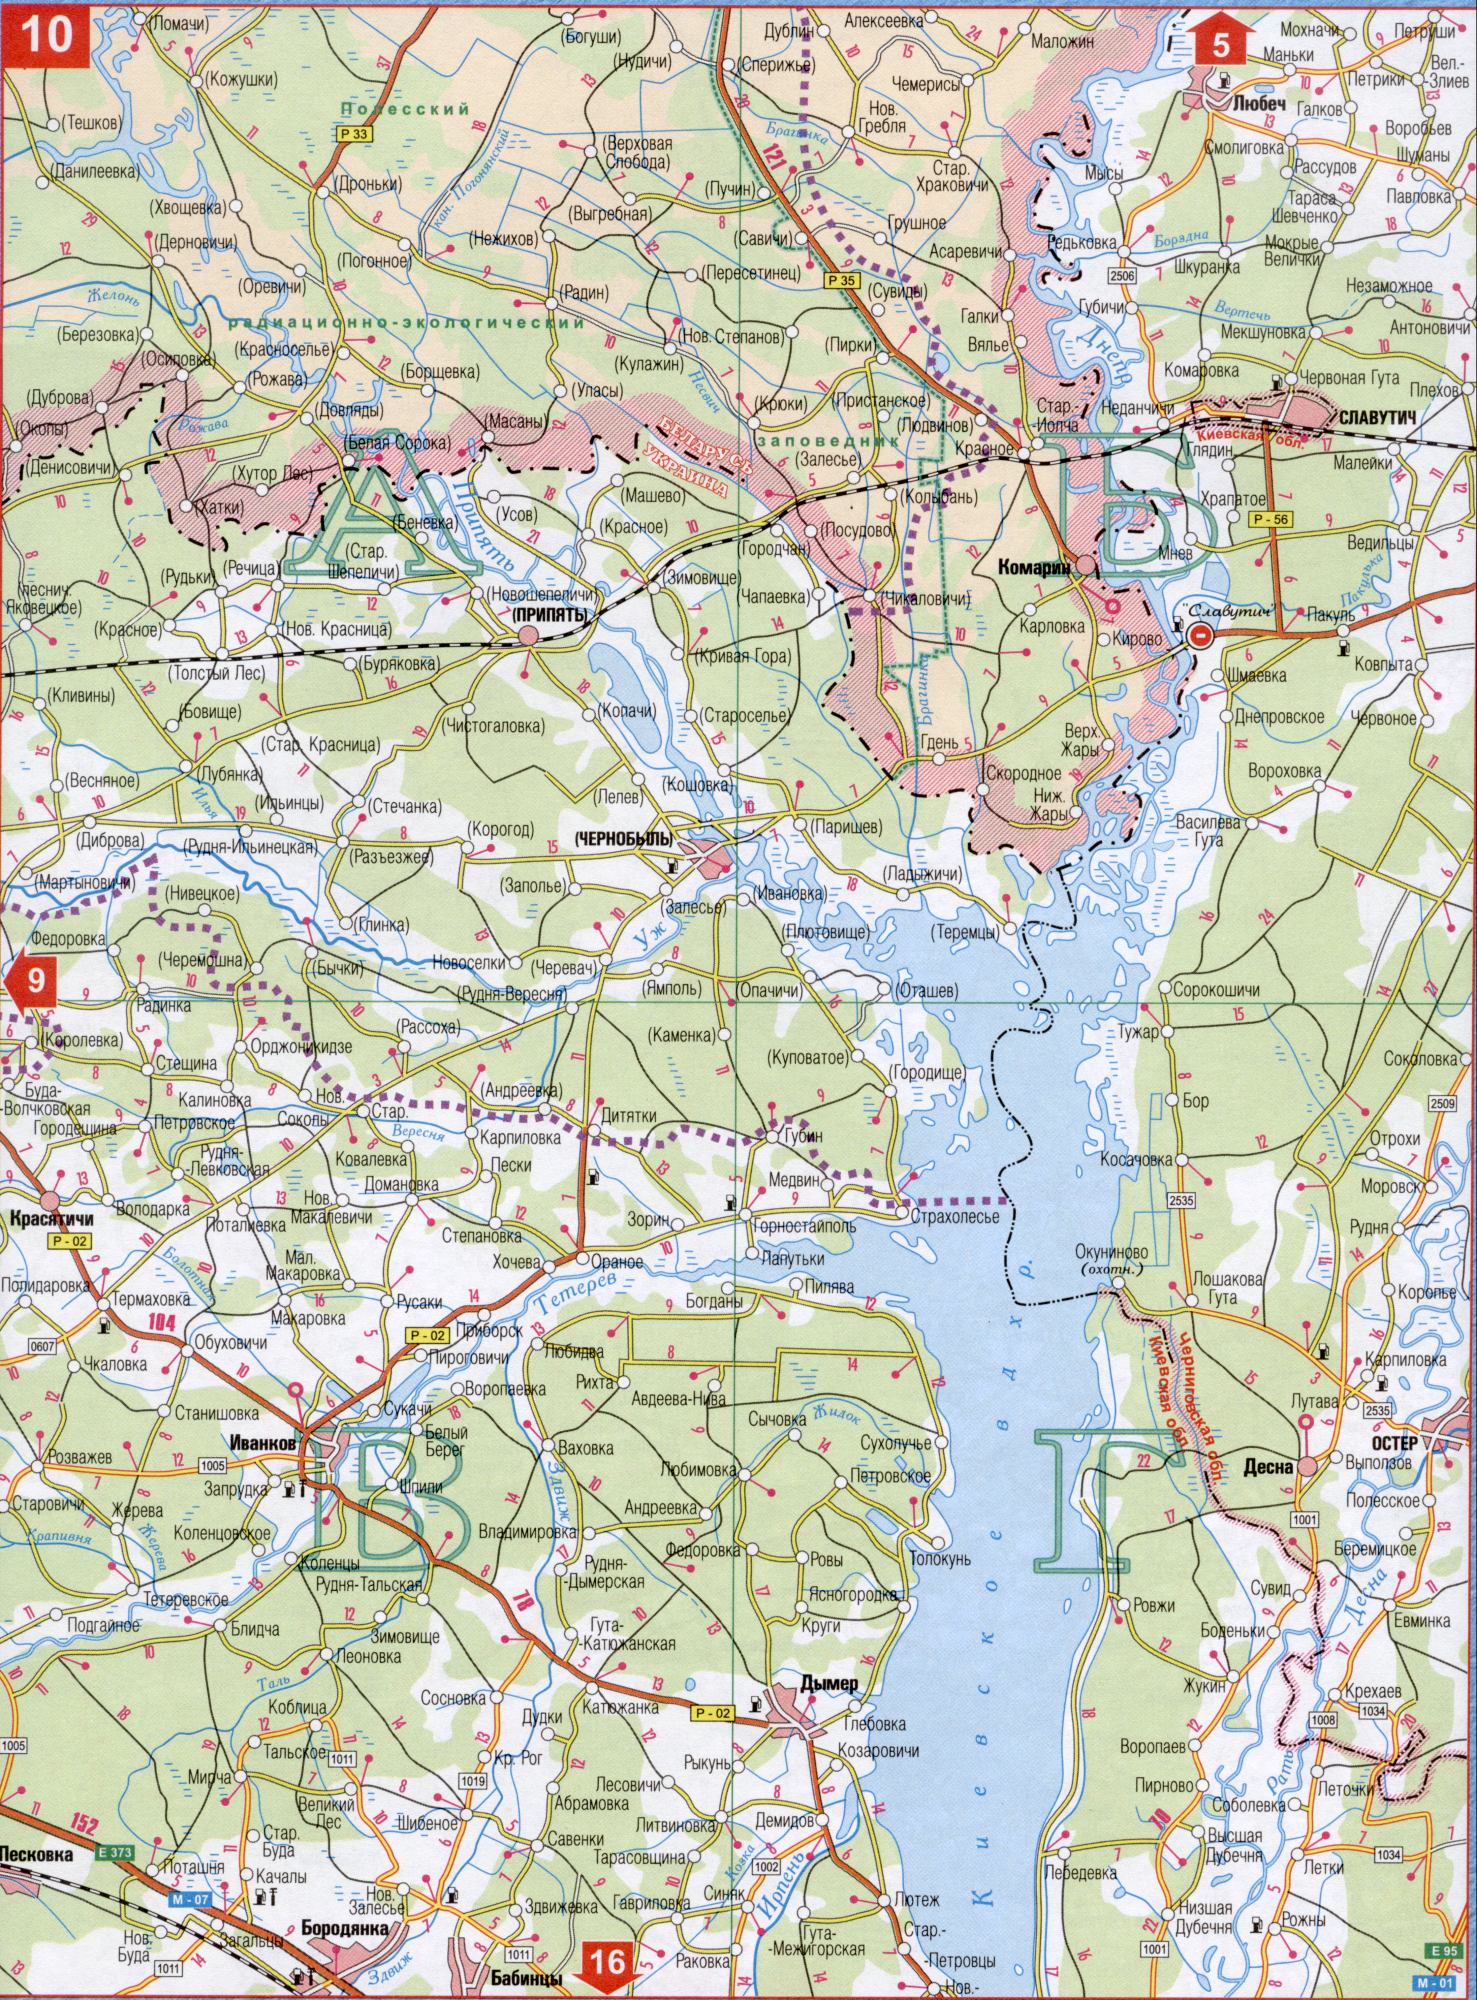 Karte der Region Kiew. Detaillierte Karte von Autobahnen Region Kiew Maßstab 1cm: 5km. Laden Sie die Karte von Kiew oblChemerisy, Alt-Buda, Oster, Gums